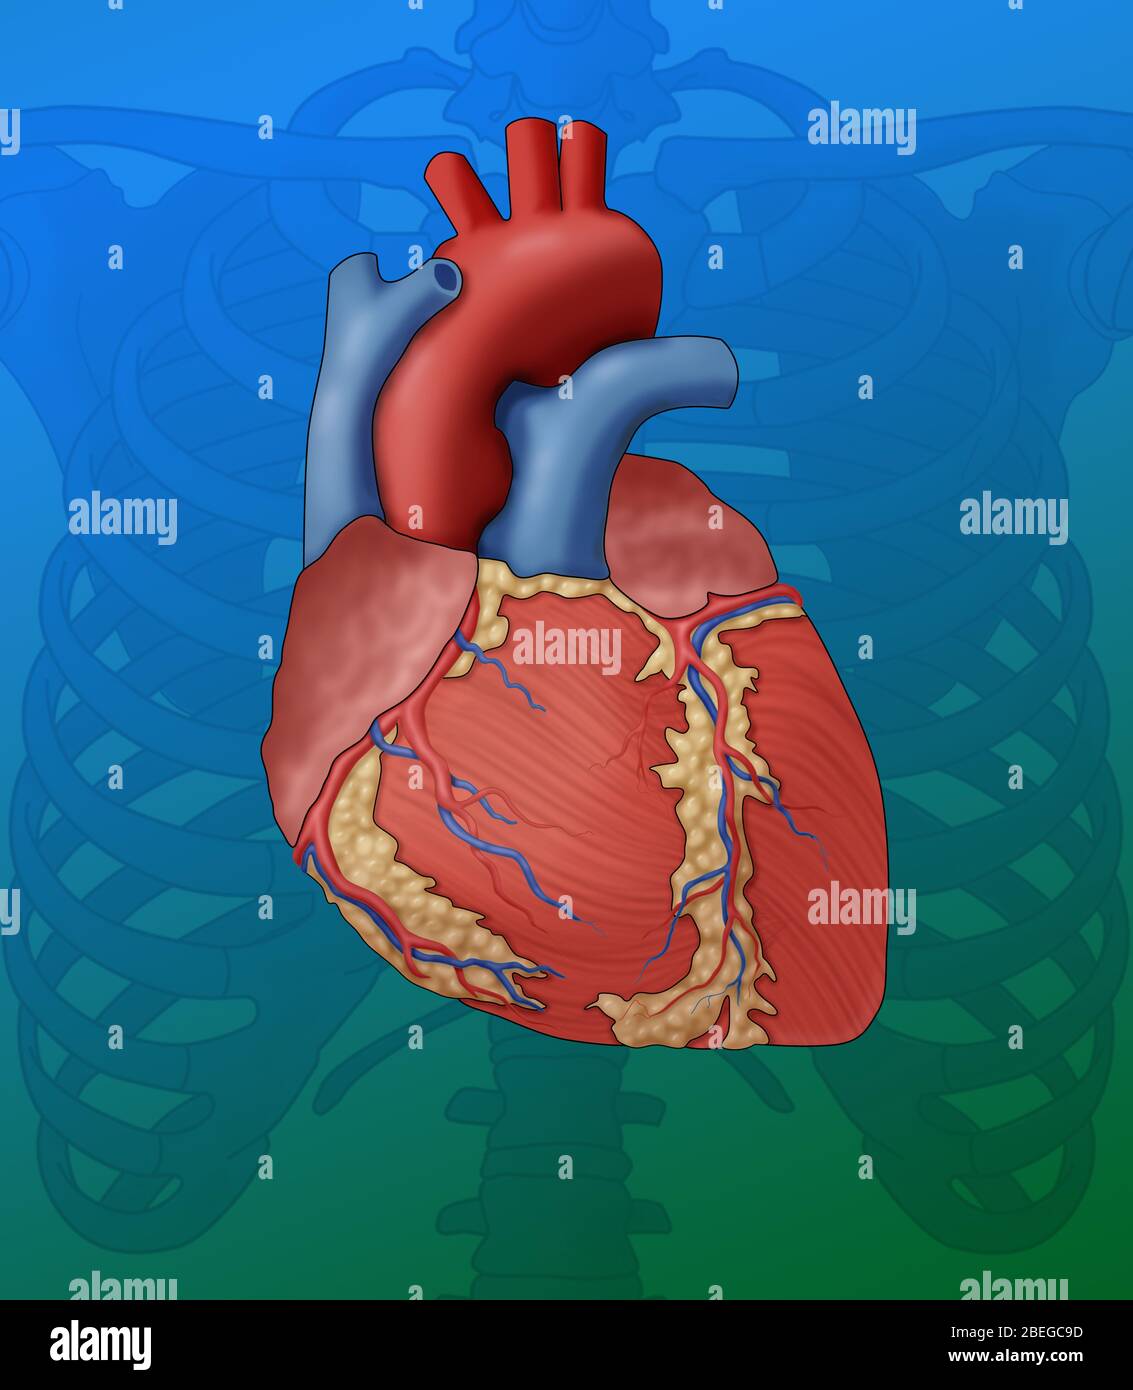 Heart Anatomy, Illustration Stock Photo